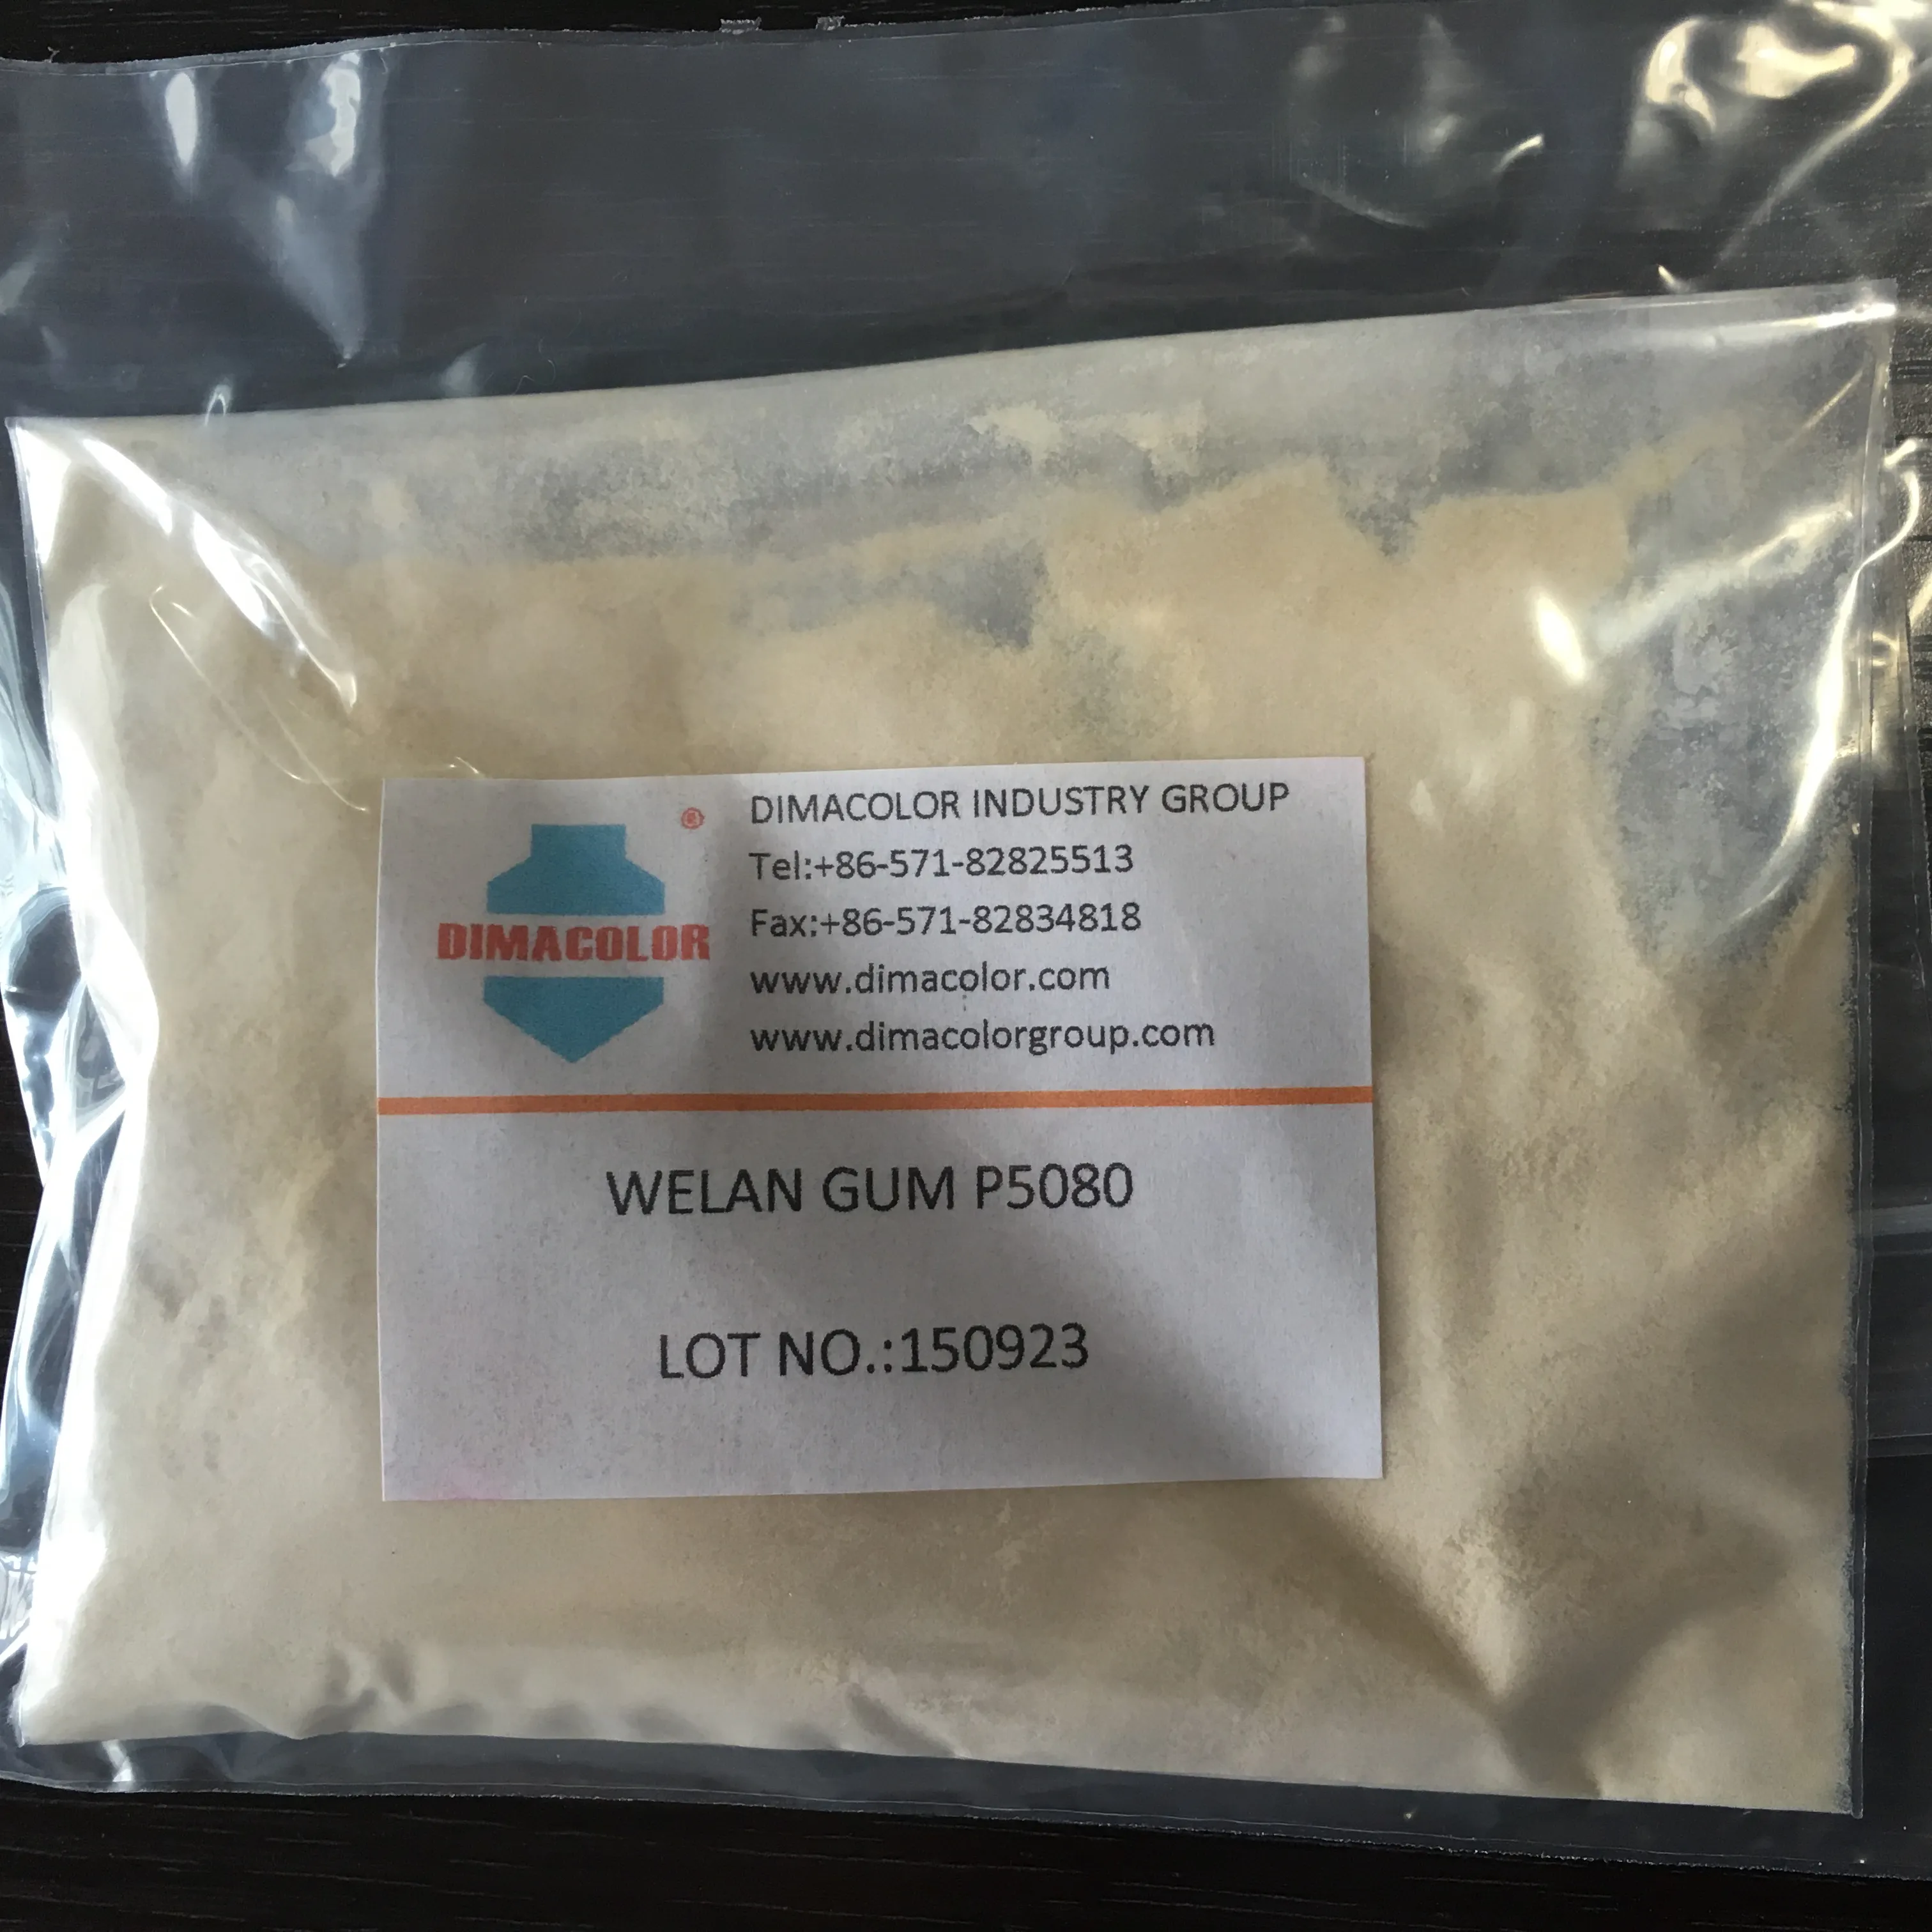 Welan Gum P5080ผลิตสารเติมแต่งอาหารการขุดเจาะน้ำมัน VS KELCO